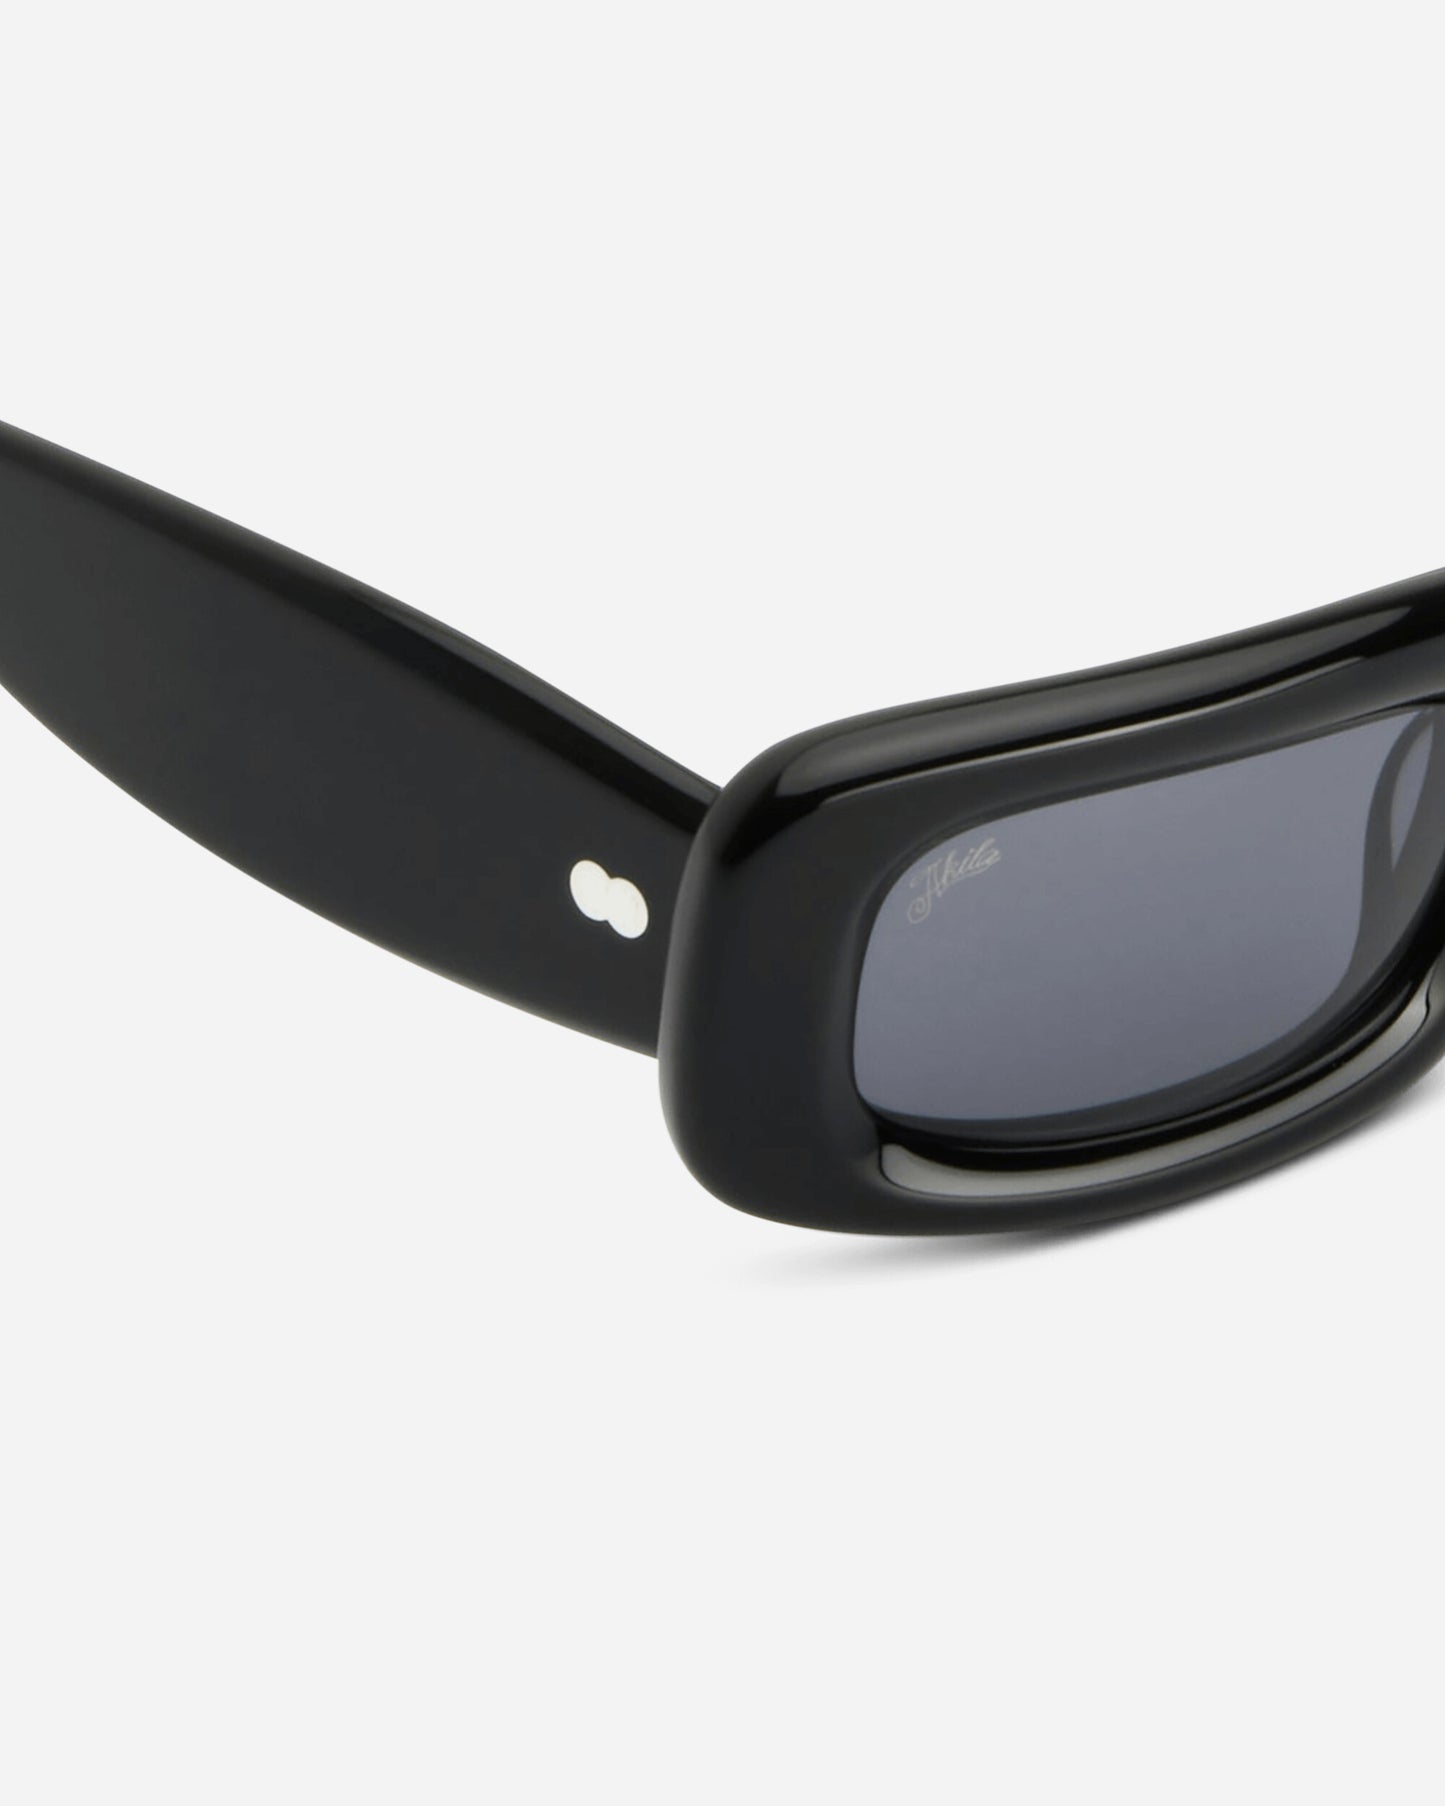 AKILA Verve Inflated Black Eyewear Sunglasses 230601 01